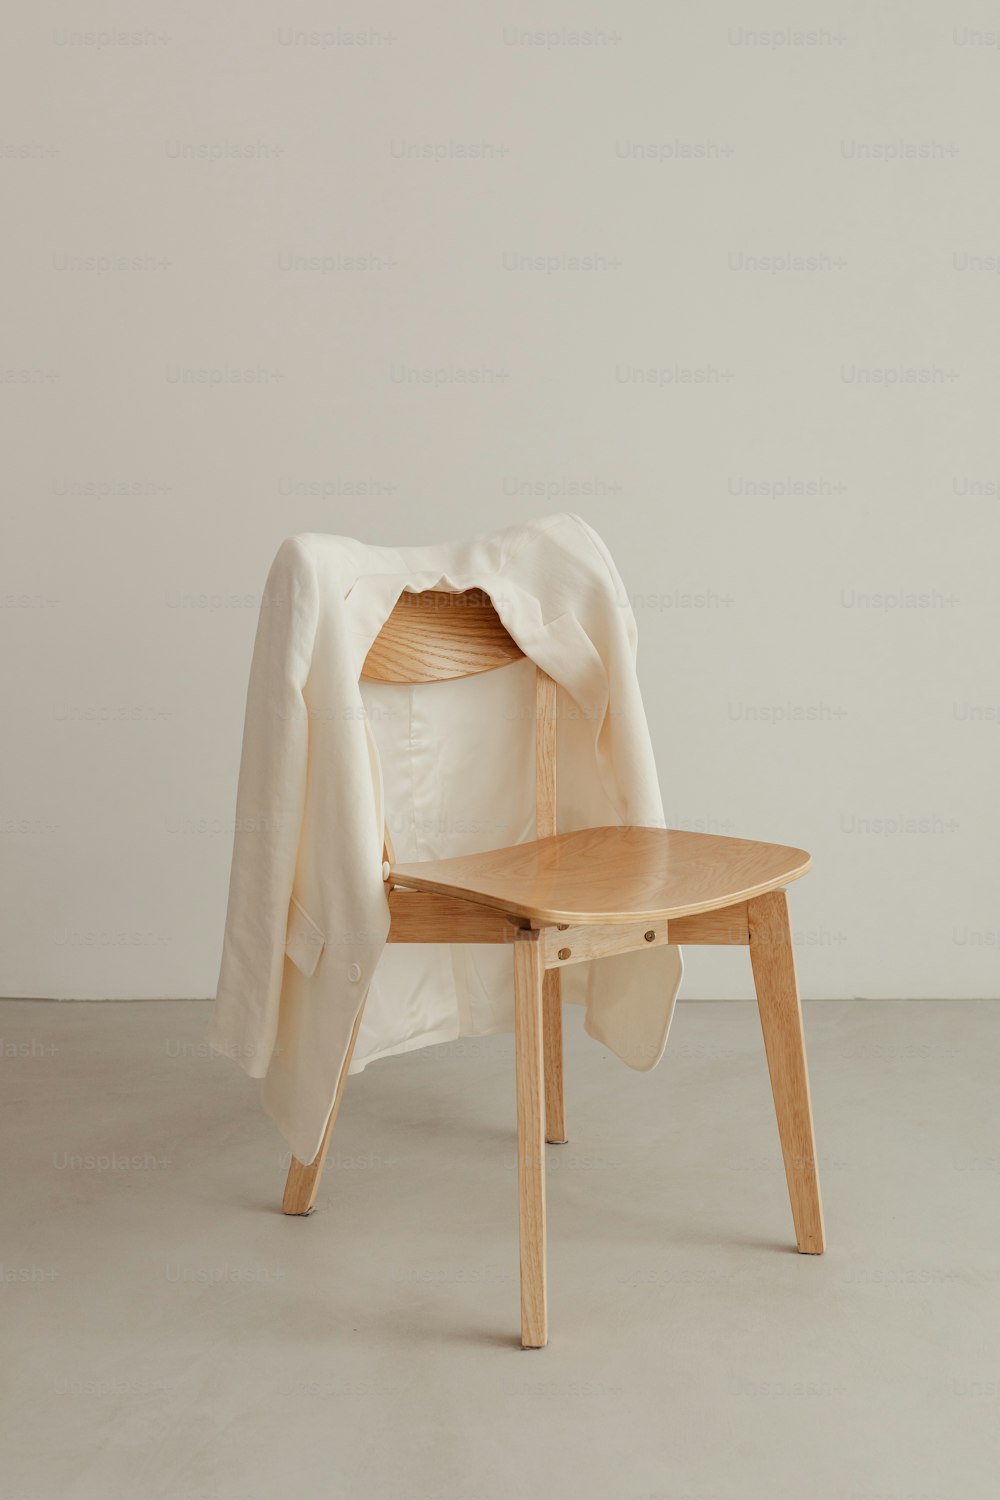 木製の椅子とその上に白い毛布